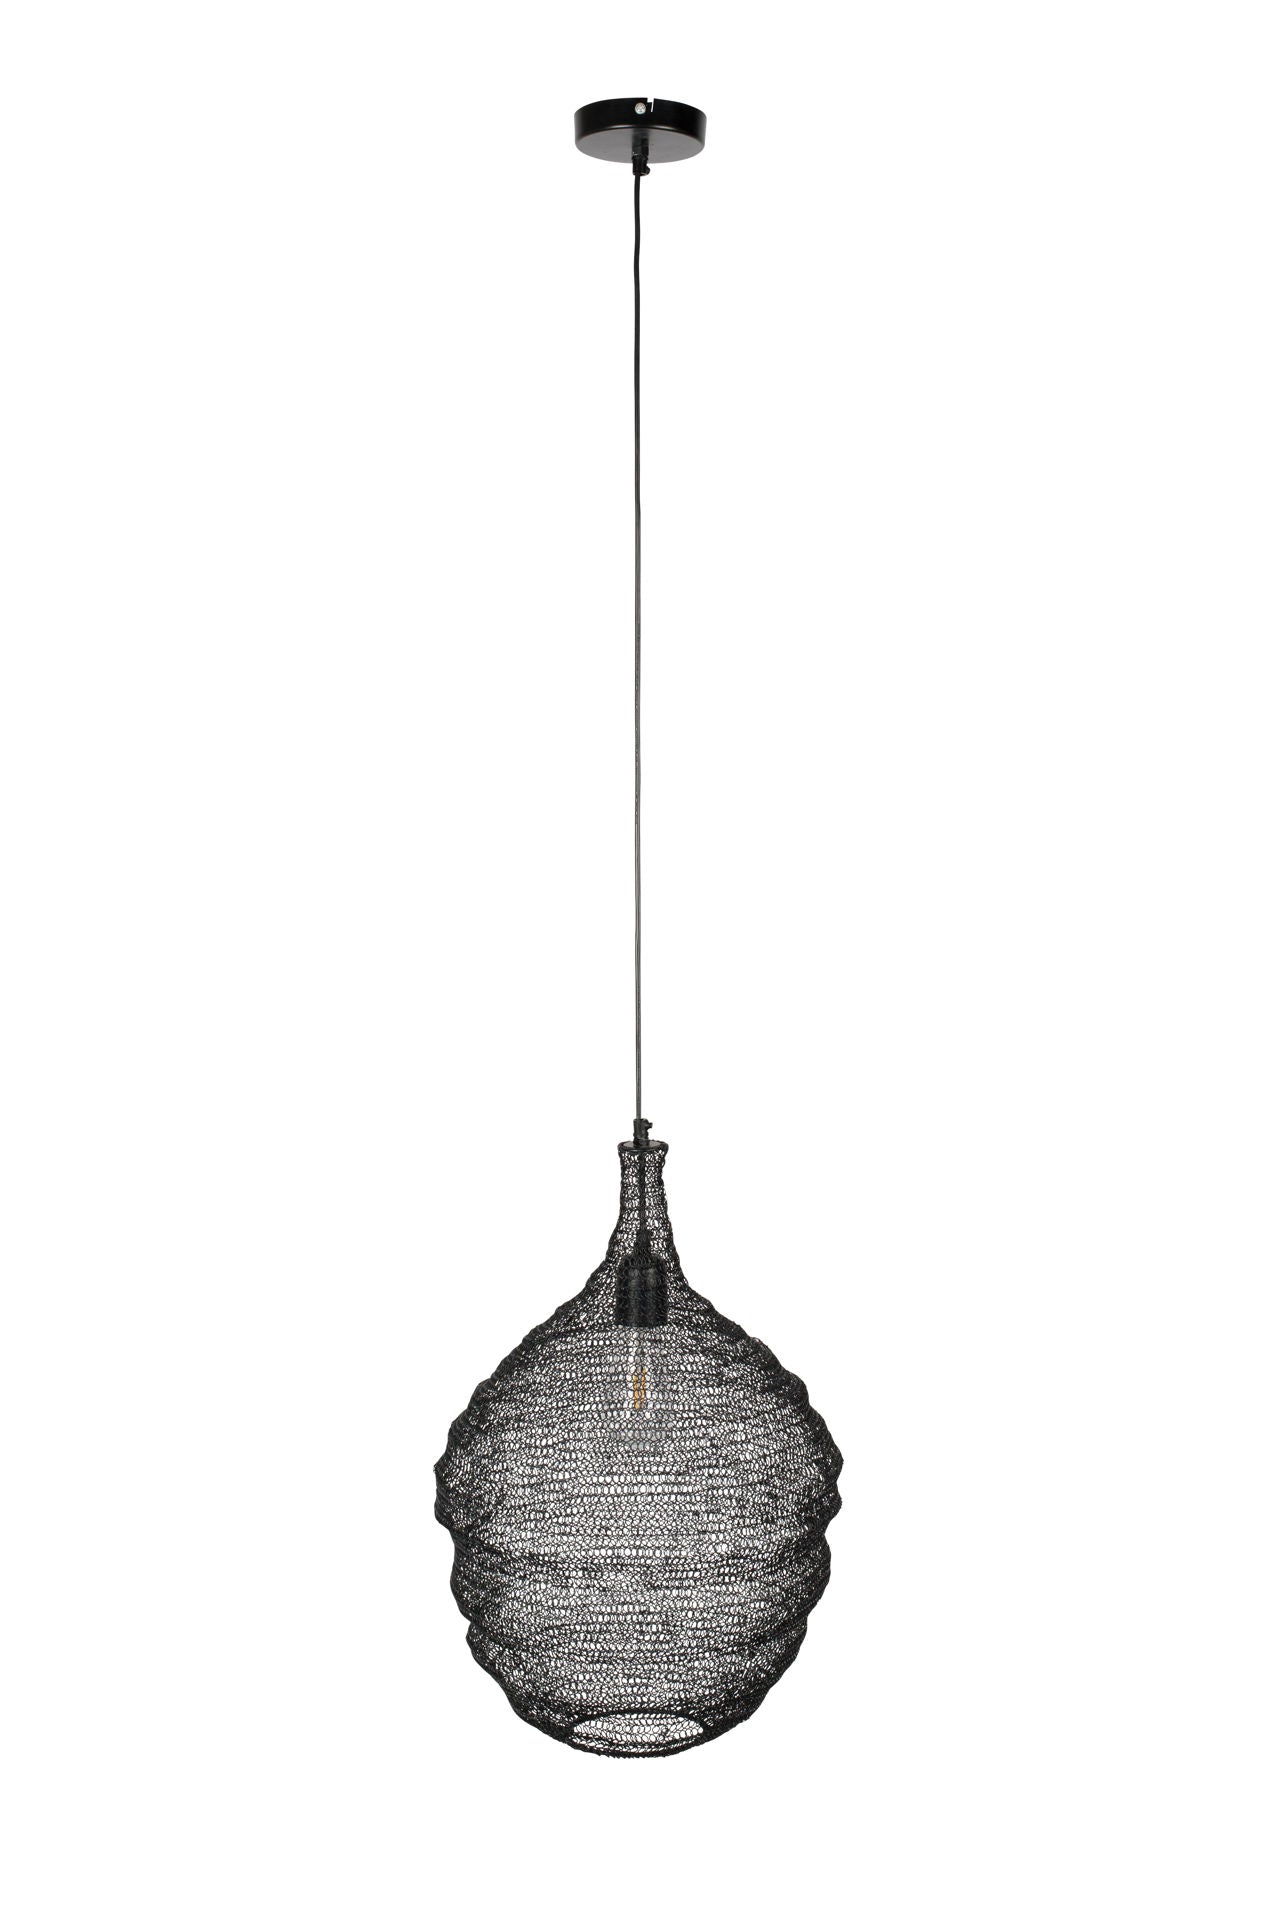 Lampe suspendue Los Alamitos de Nancy - Moderne - Noir - Fer, Pvc - 37 cm x 37 cm x 155 cm